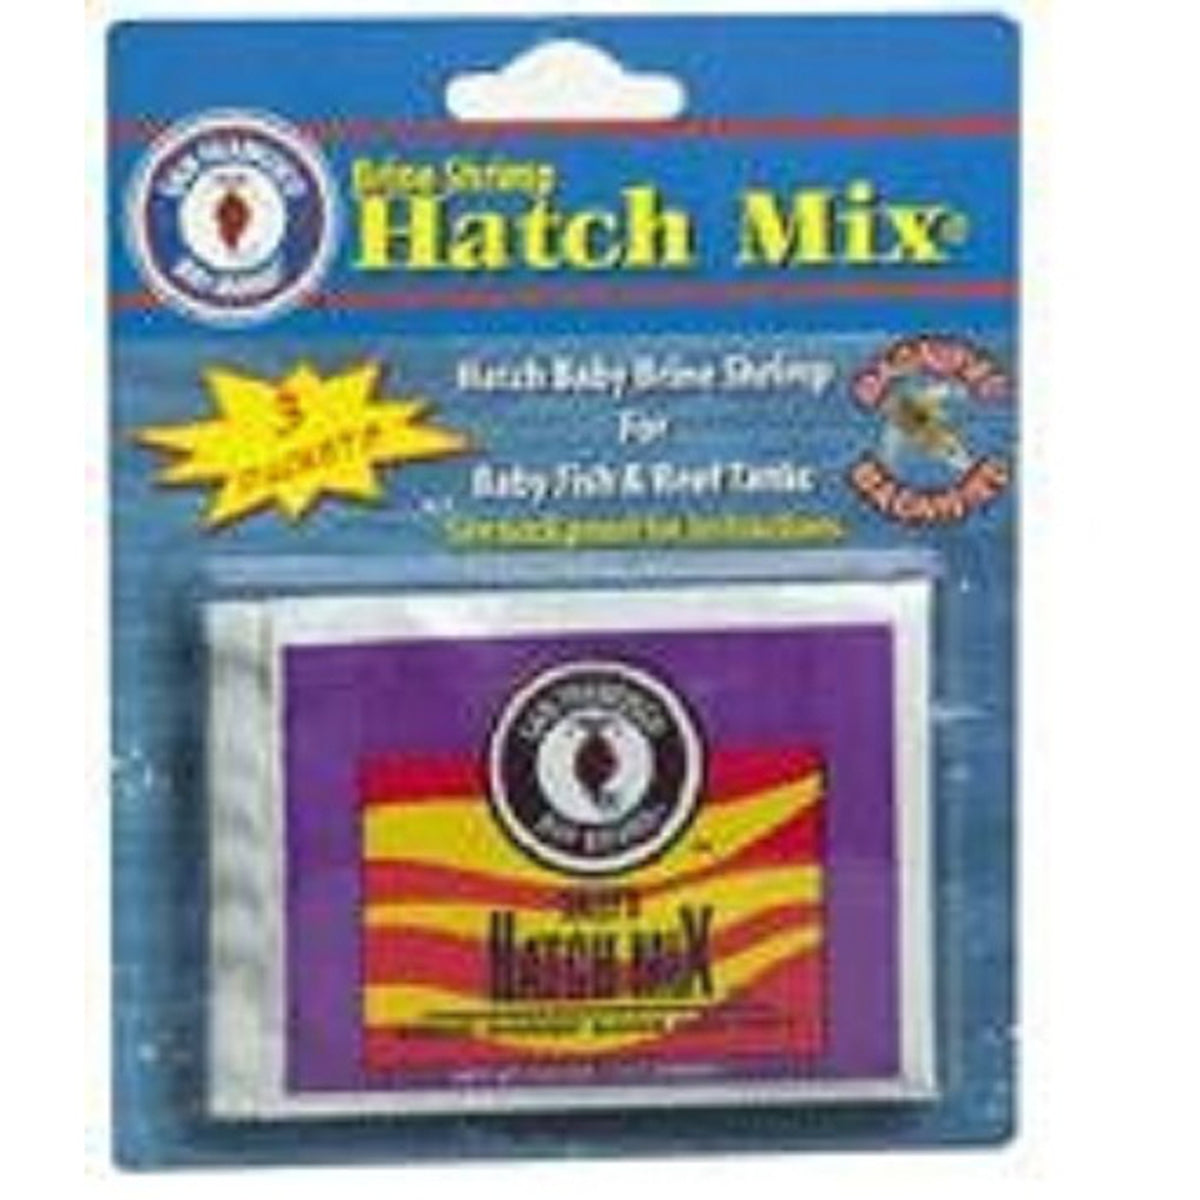 SF Bay Brine Shrimp Hatch Mix - 3pk